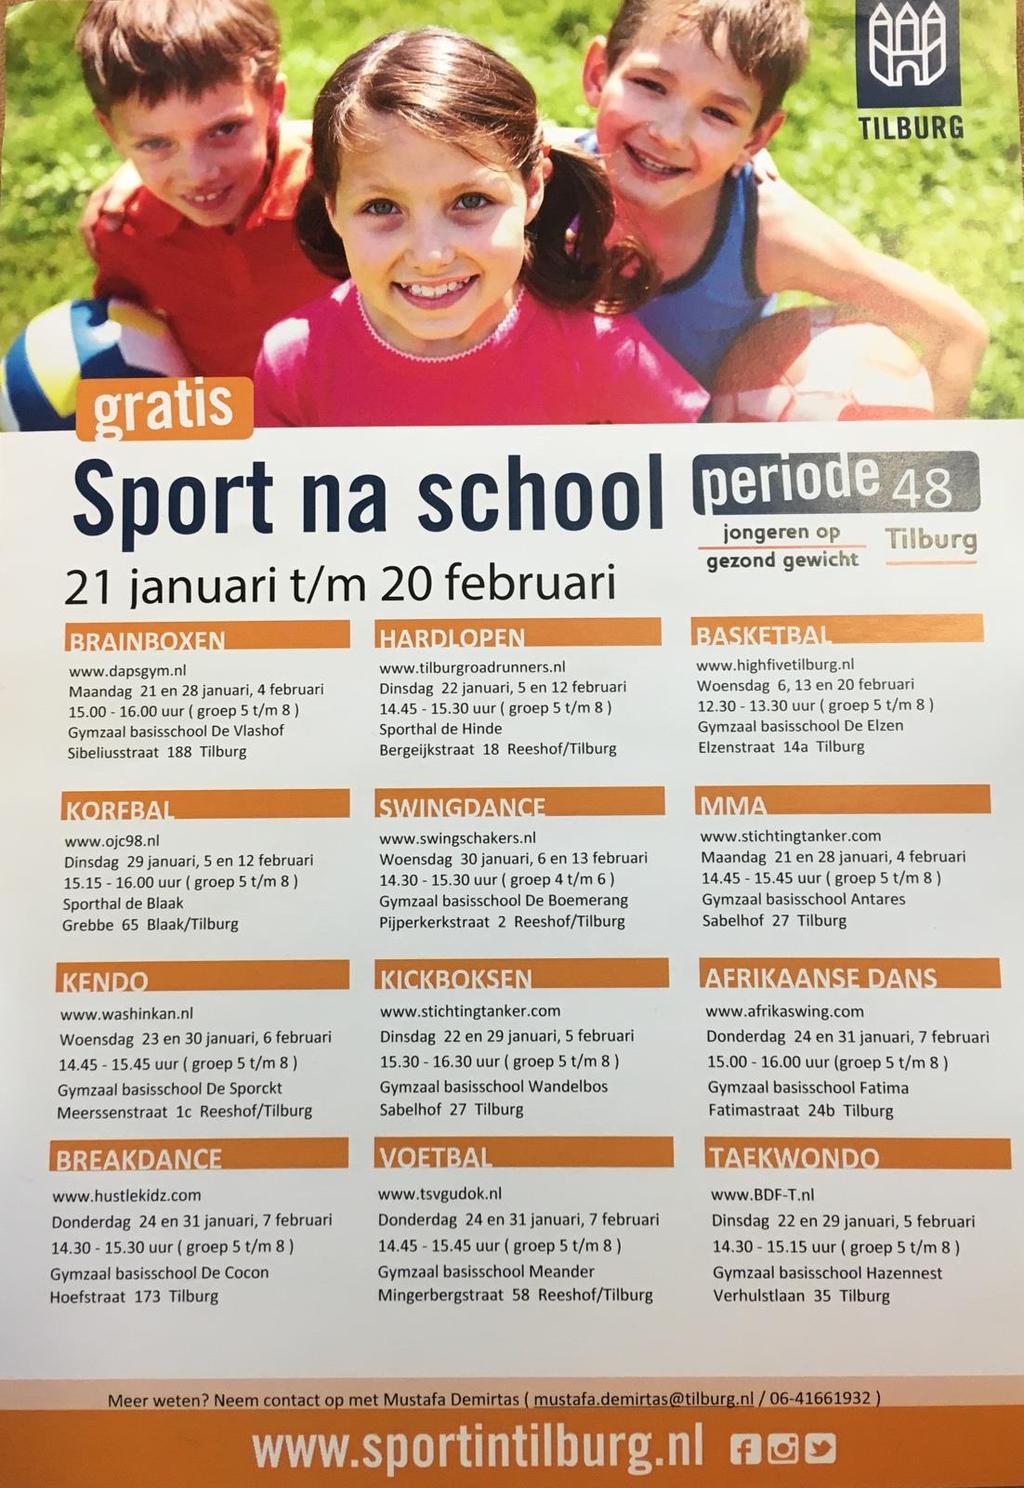 Sport na school Van 21 januari t/m 20 februari zijn er binnen Tilburg allerlei verschillende sporten gratis te beoefenen.